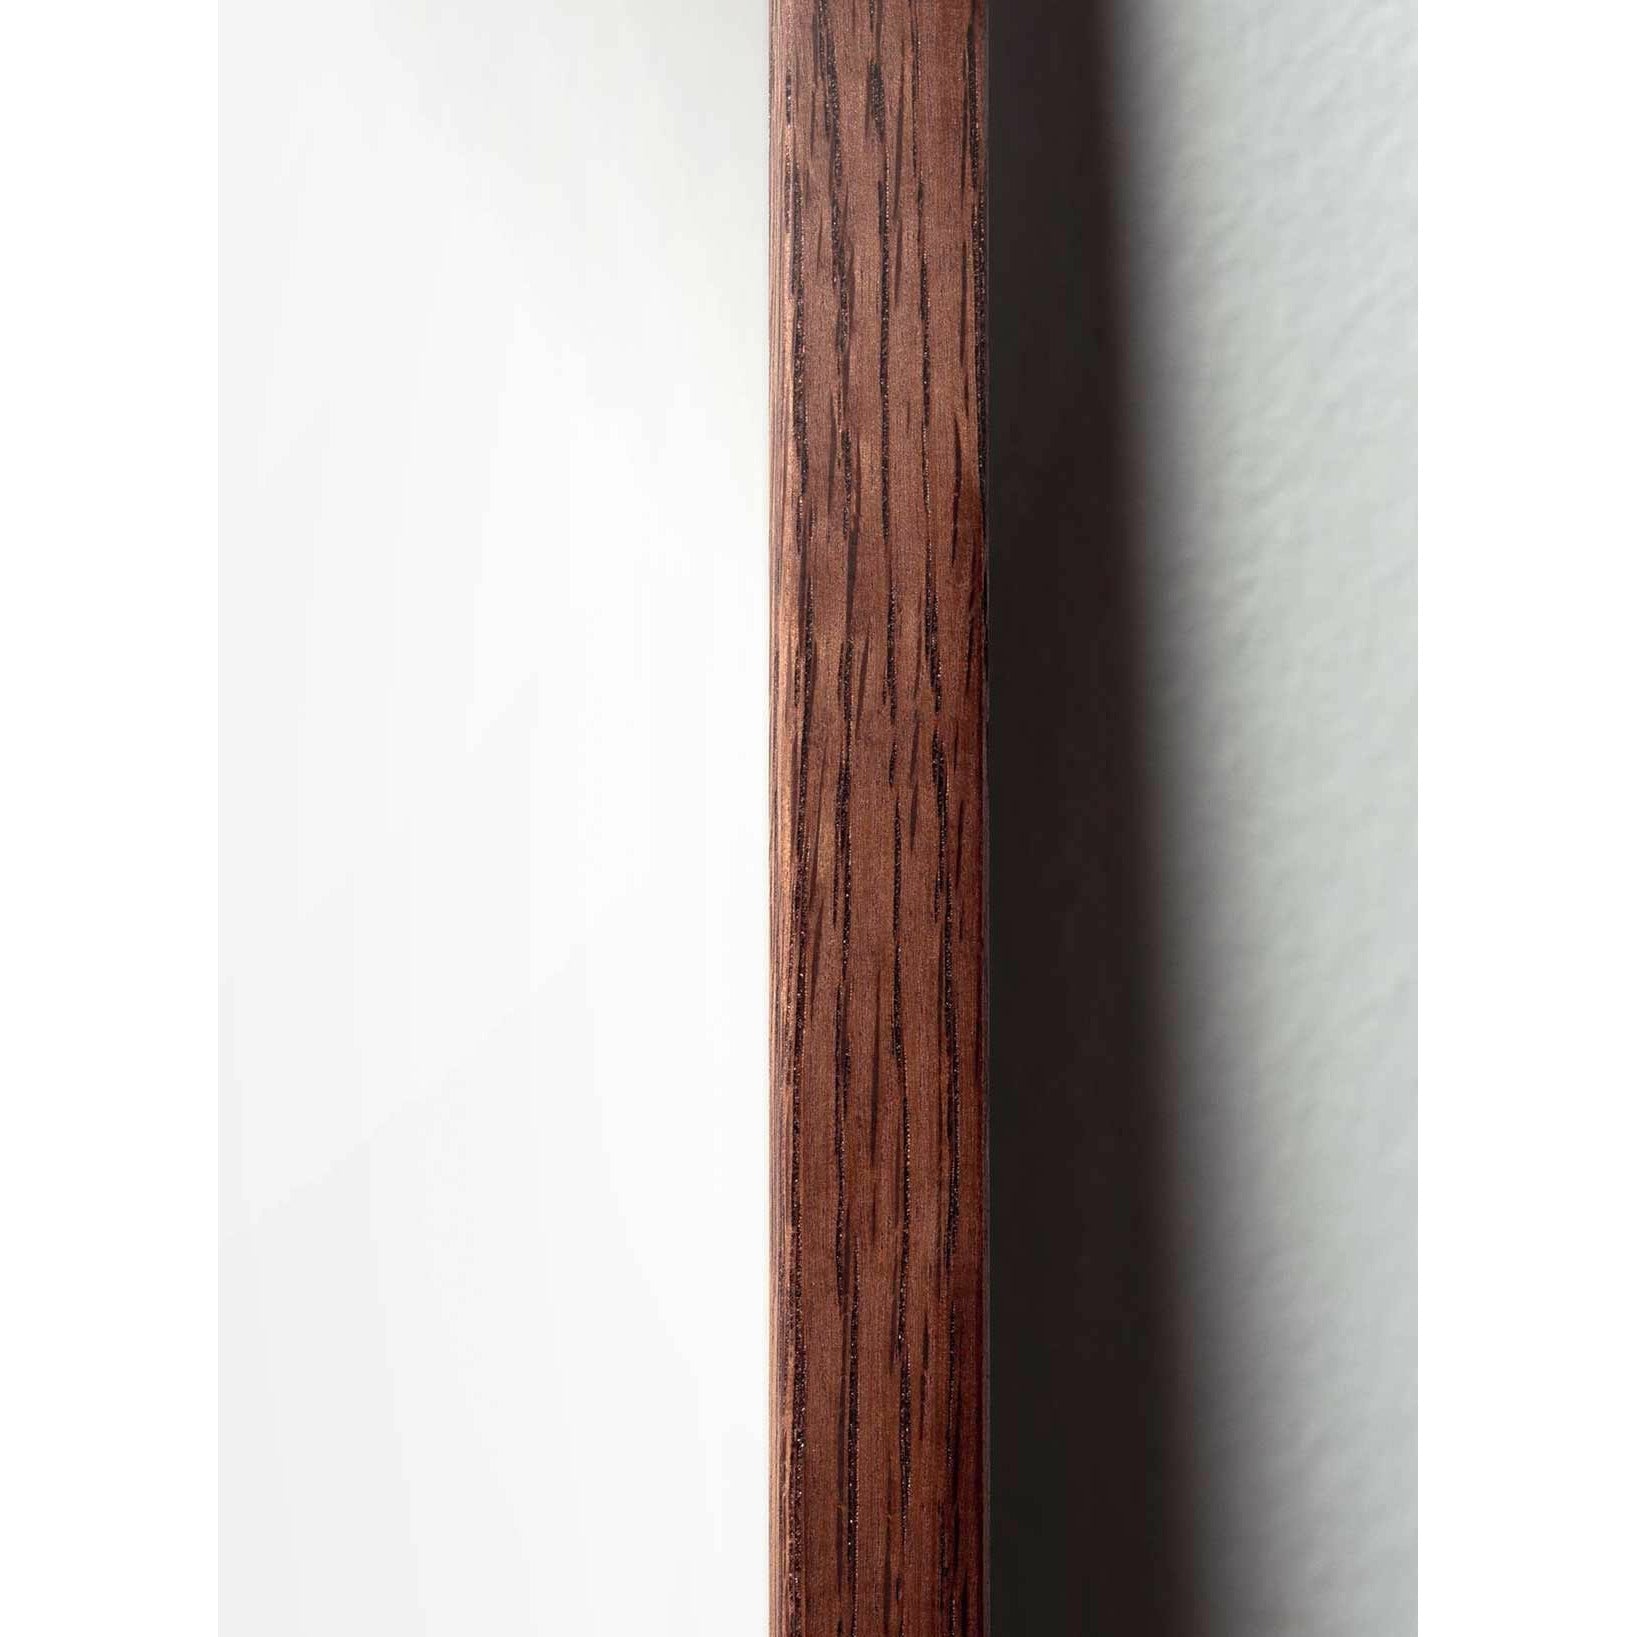 Póster de Desfile Swan de creación, marco hecho de madera oscura, 50x70 cm